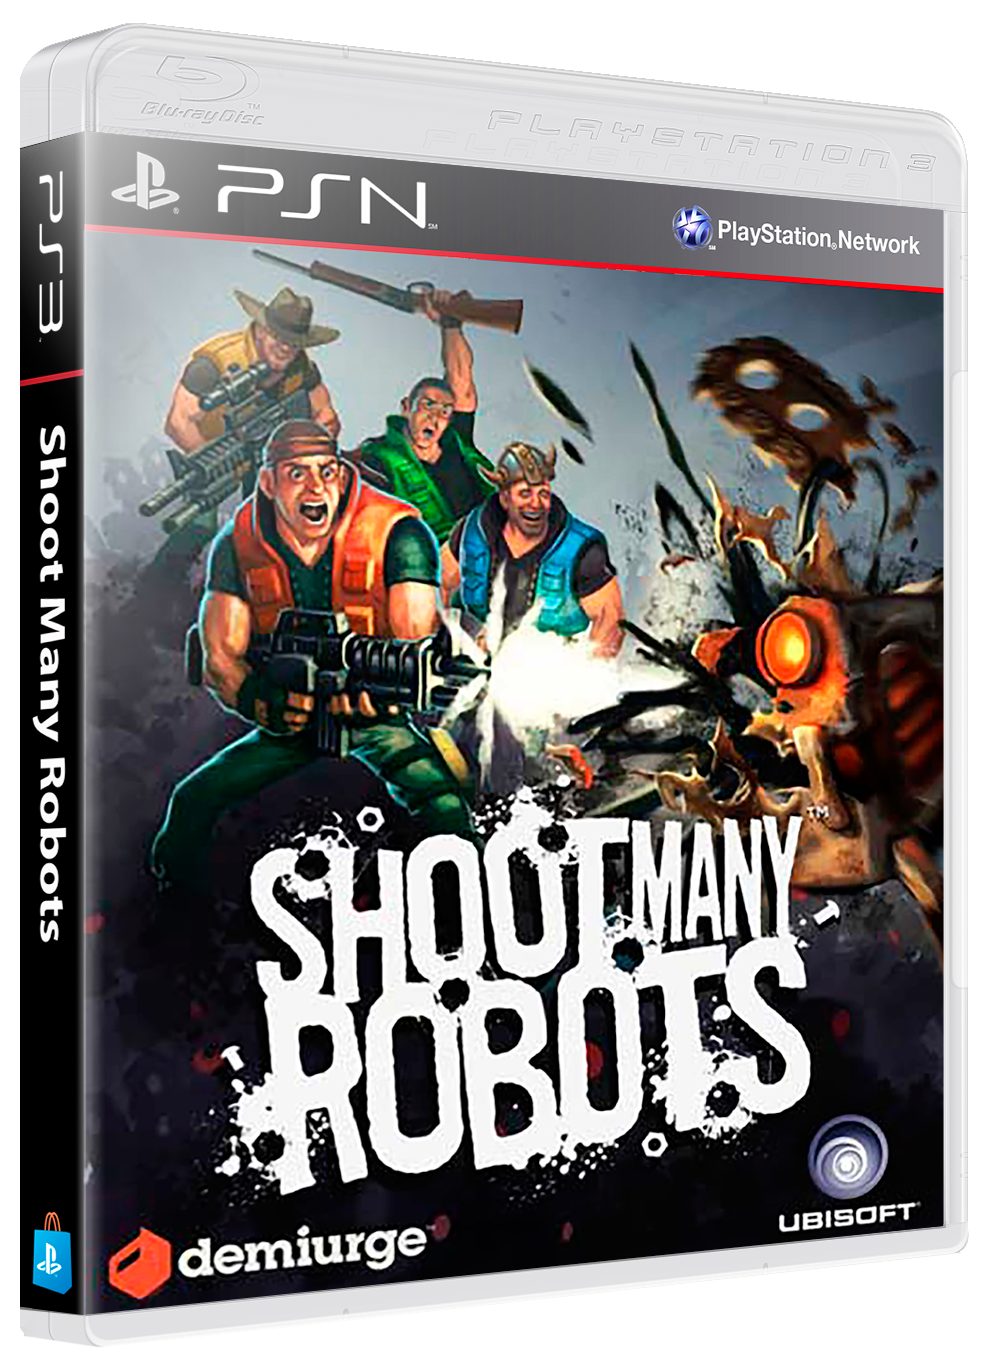 Shoot Many Robots já está disponível de graça no Xbox 360